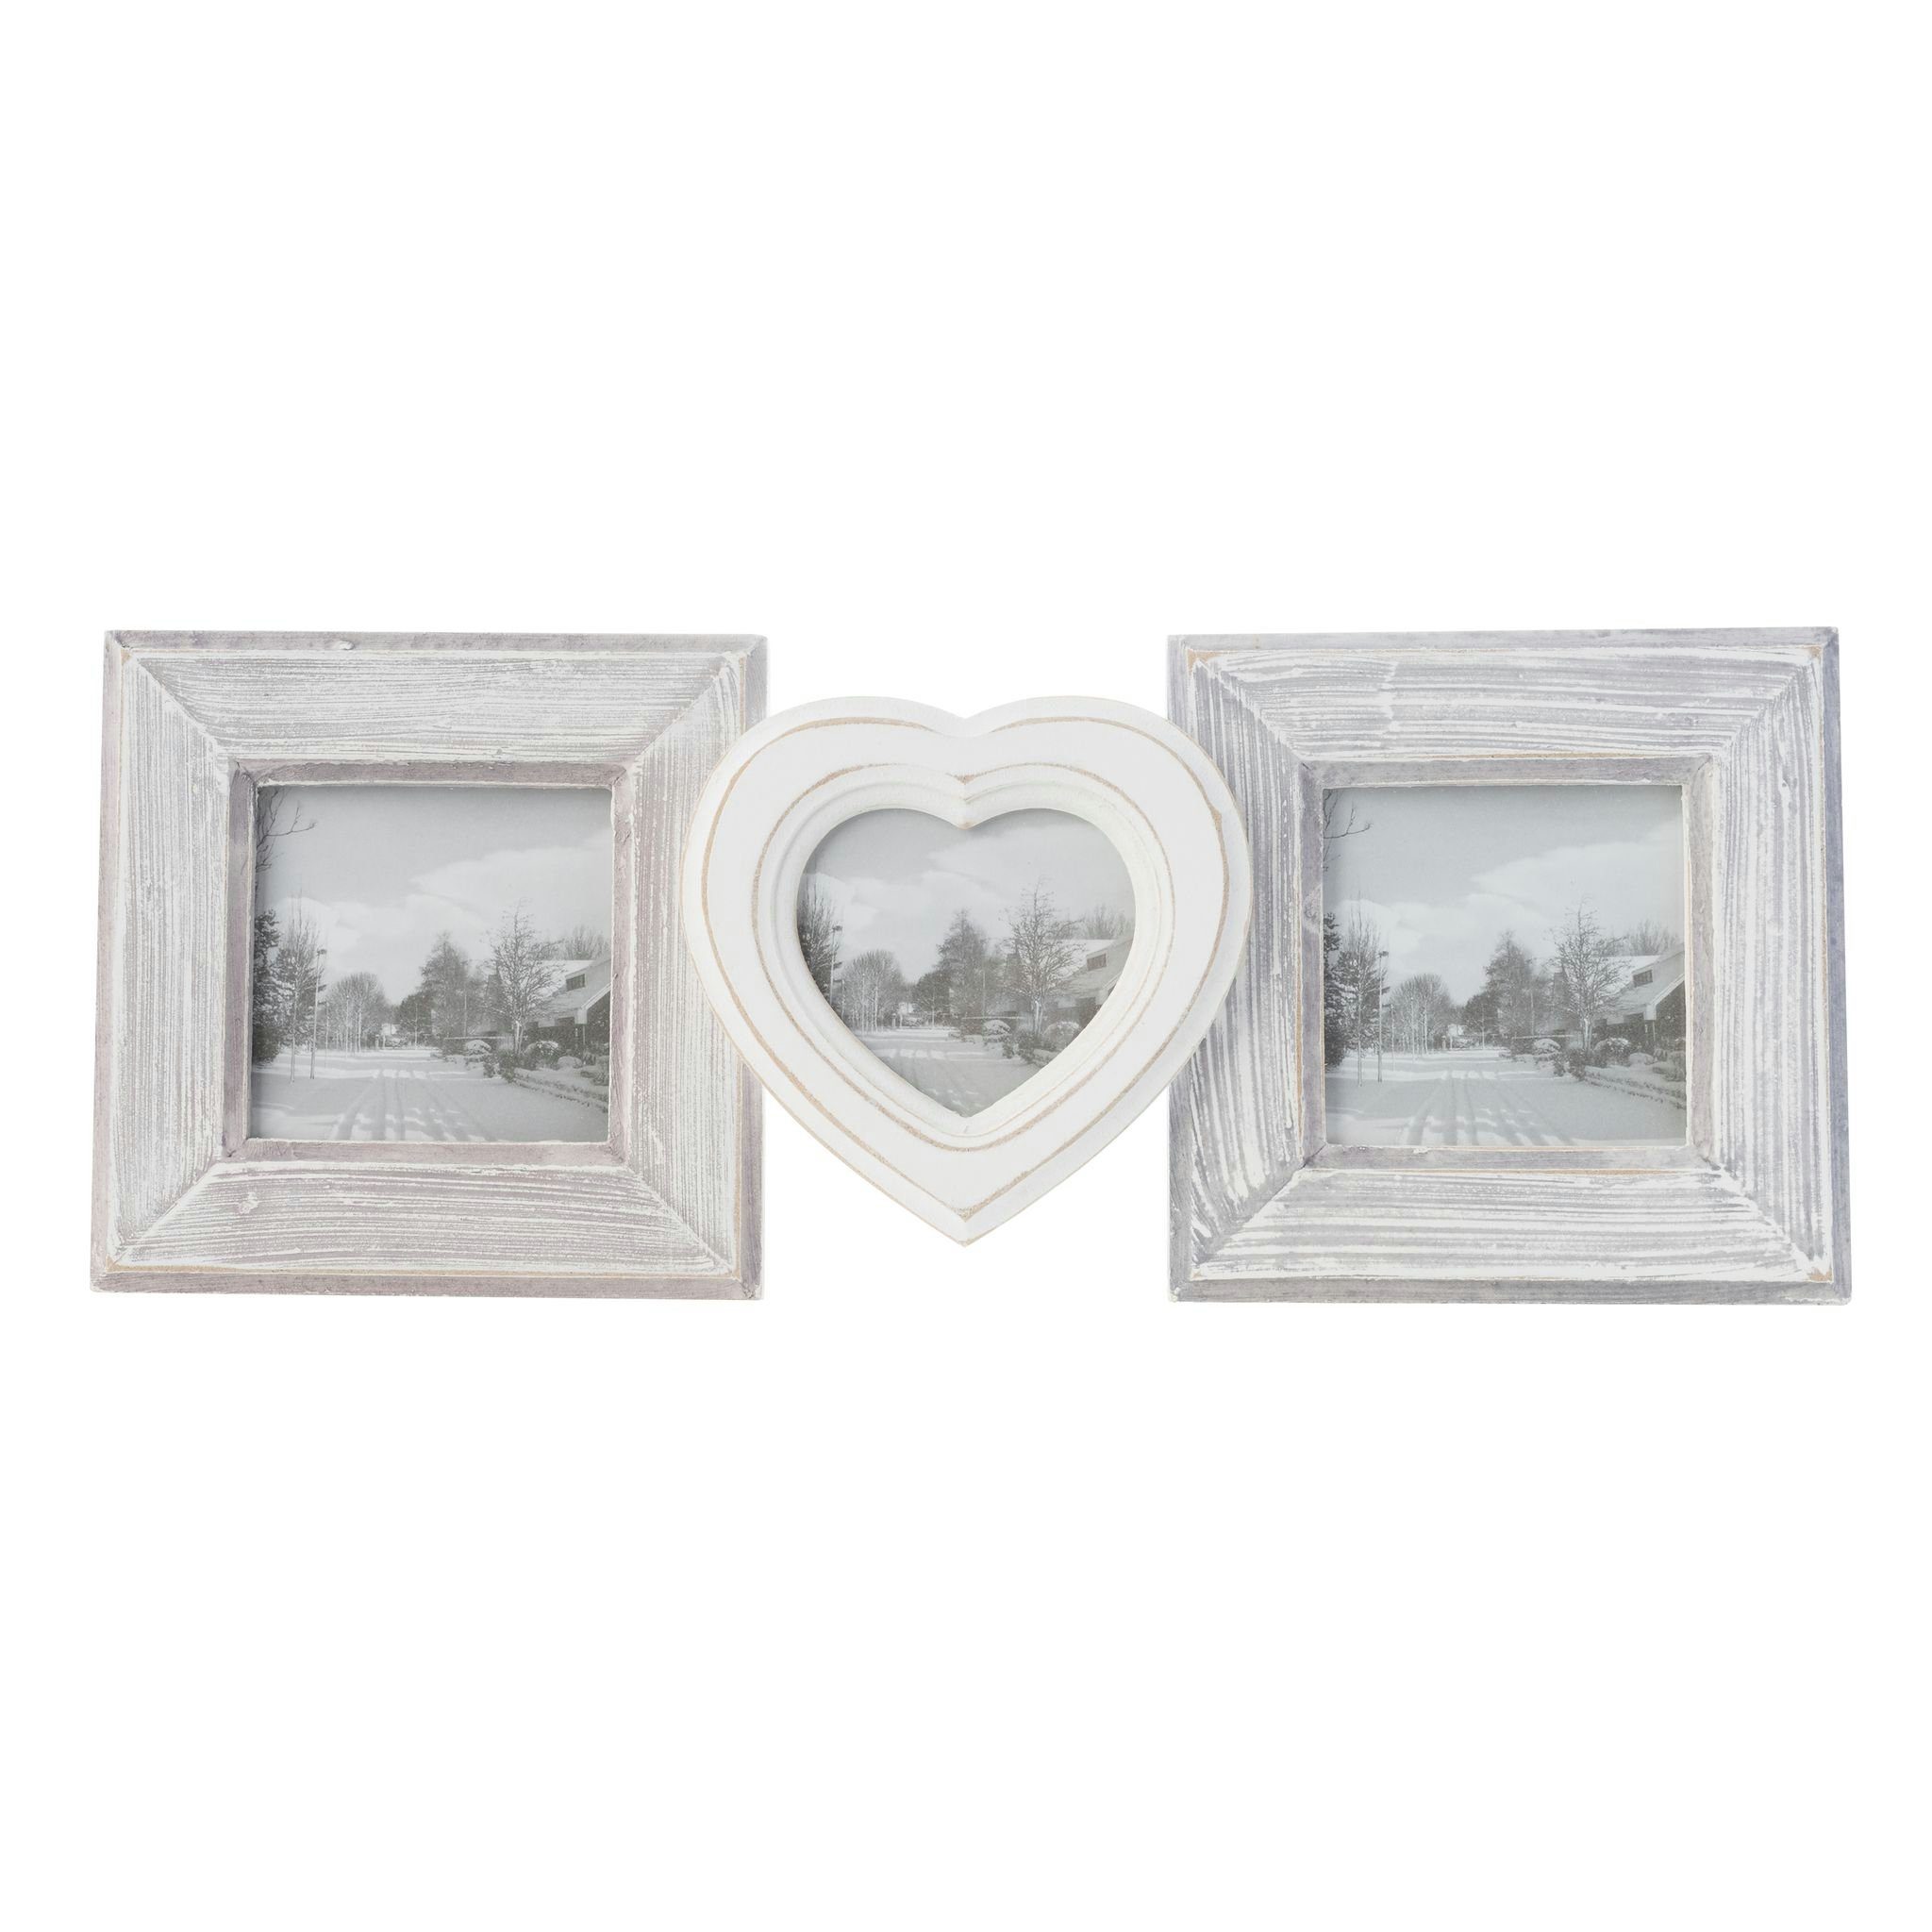 elbmöbel Bilderrahmen Bilderrahmen 3er HERZ weiß grau Holz, für 3 Bilder,  Hochzeitsrahmen: 3er Rahmen Herz 30x16x3 cm weiß/grau Vintage